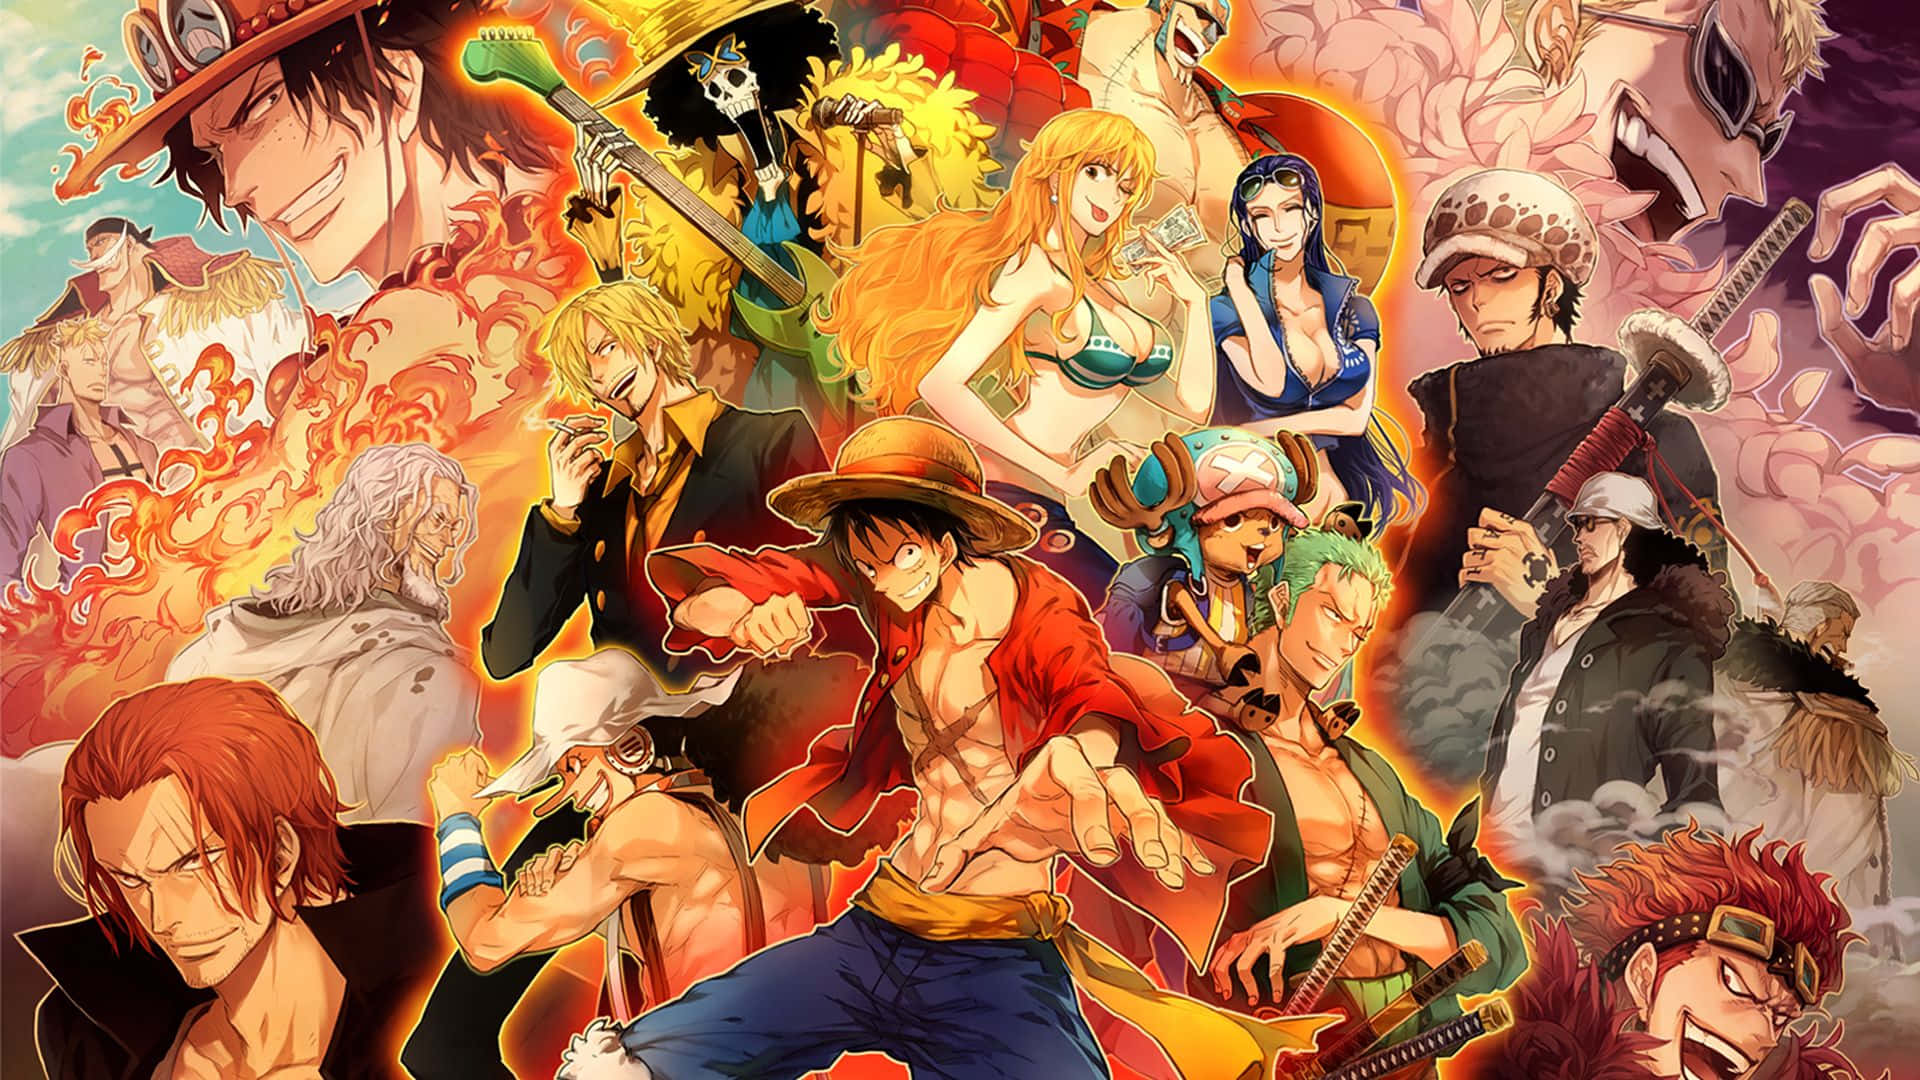 Raffinatosfondo Per Computer O Mobile Del Famoso Anime One Piece, Con Tutti I Personaggi In Alta Definizione. Sfondo